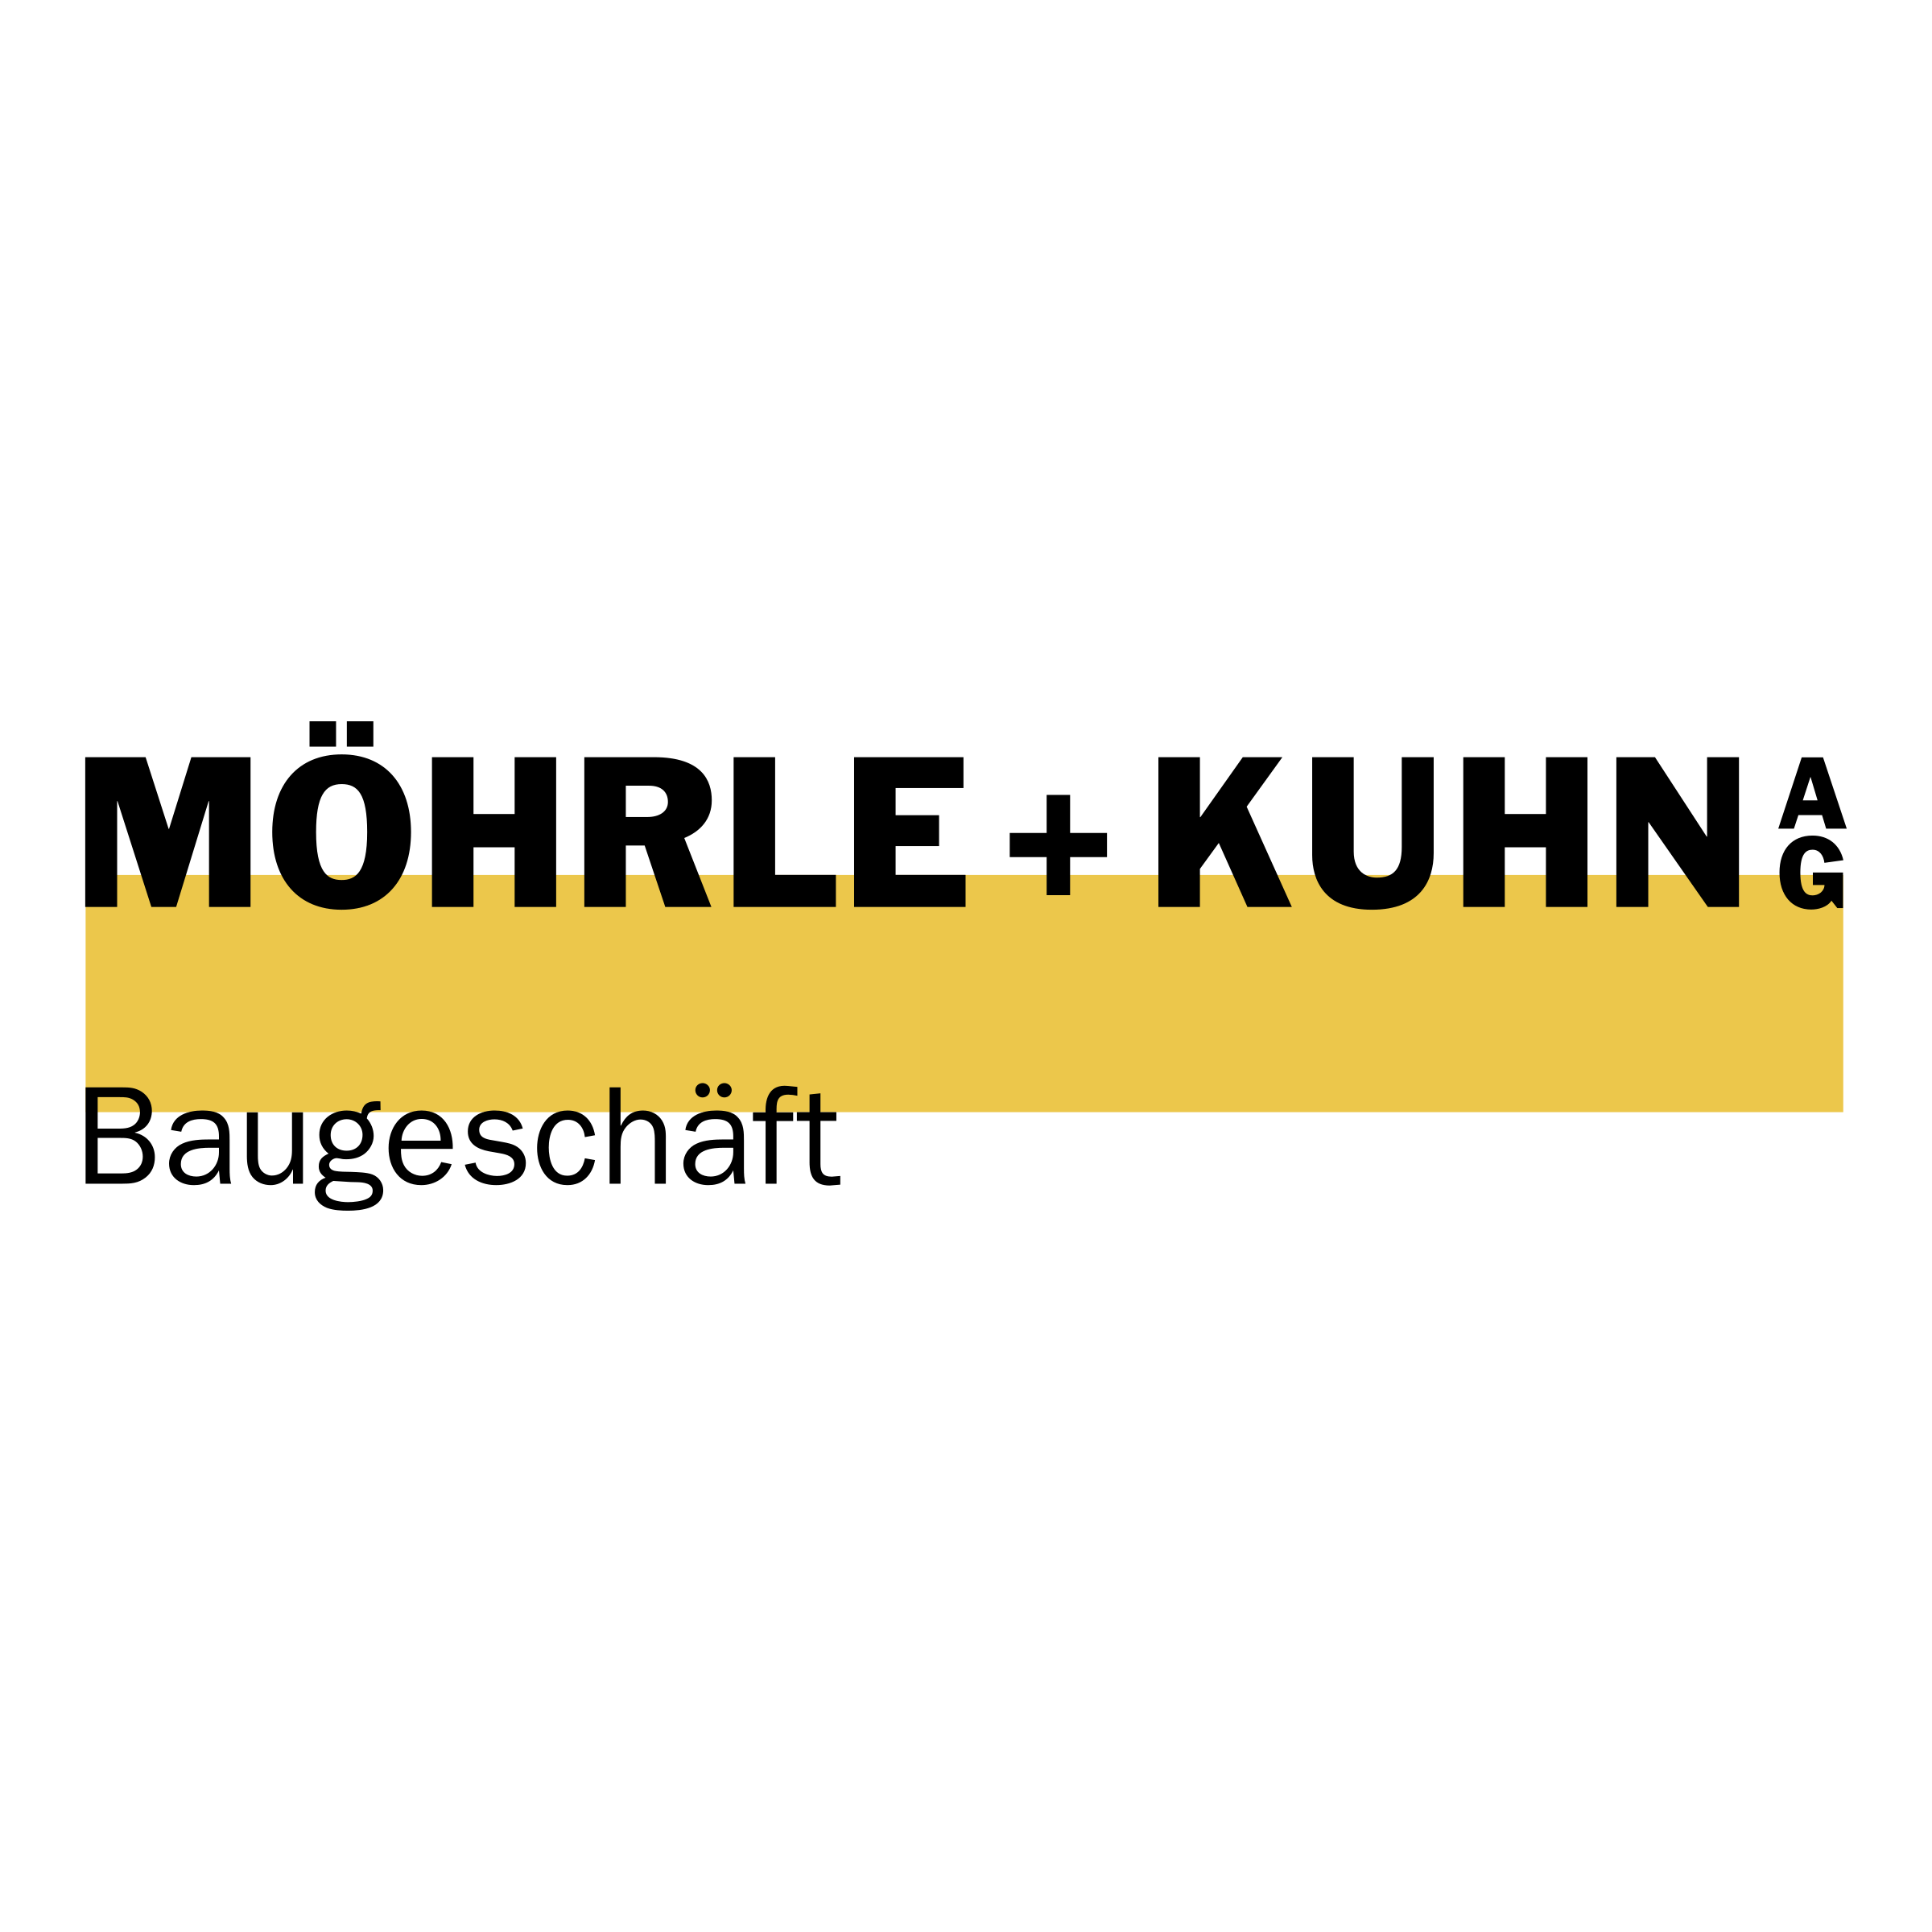 Kuhn Logo - Moehrle + Kuhn Logo PNG Transparent & SVG Vector - Freebie Supply